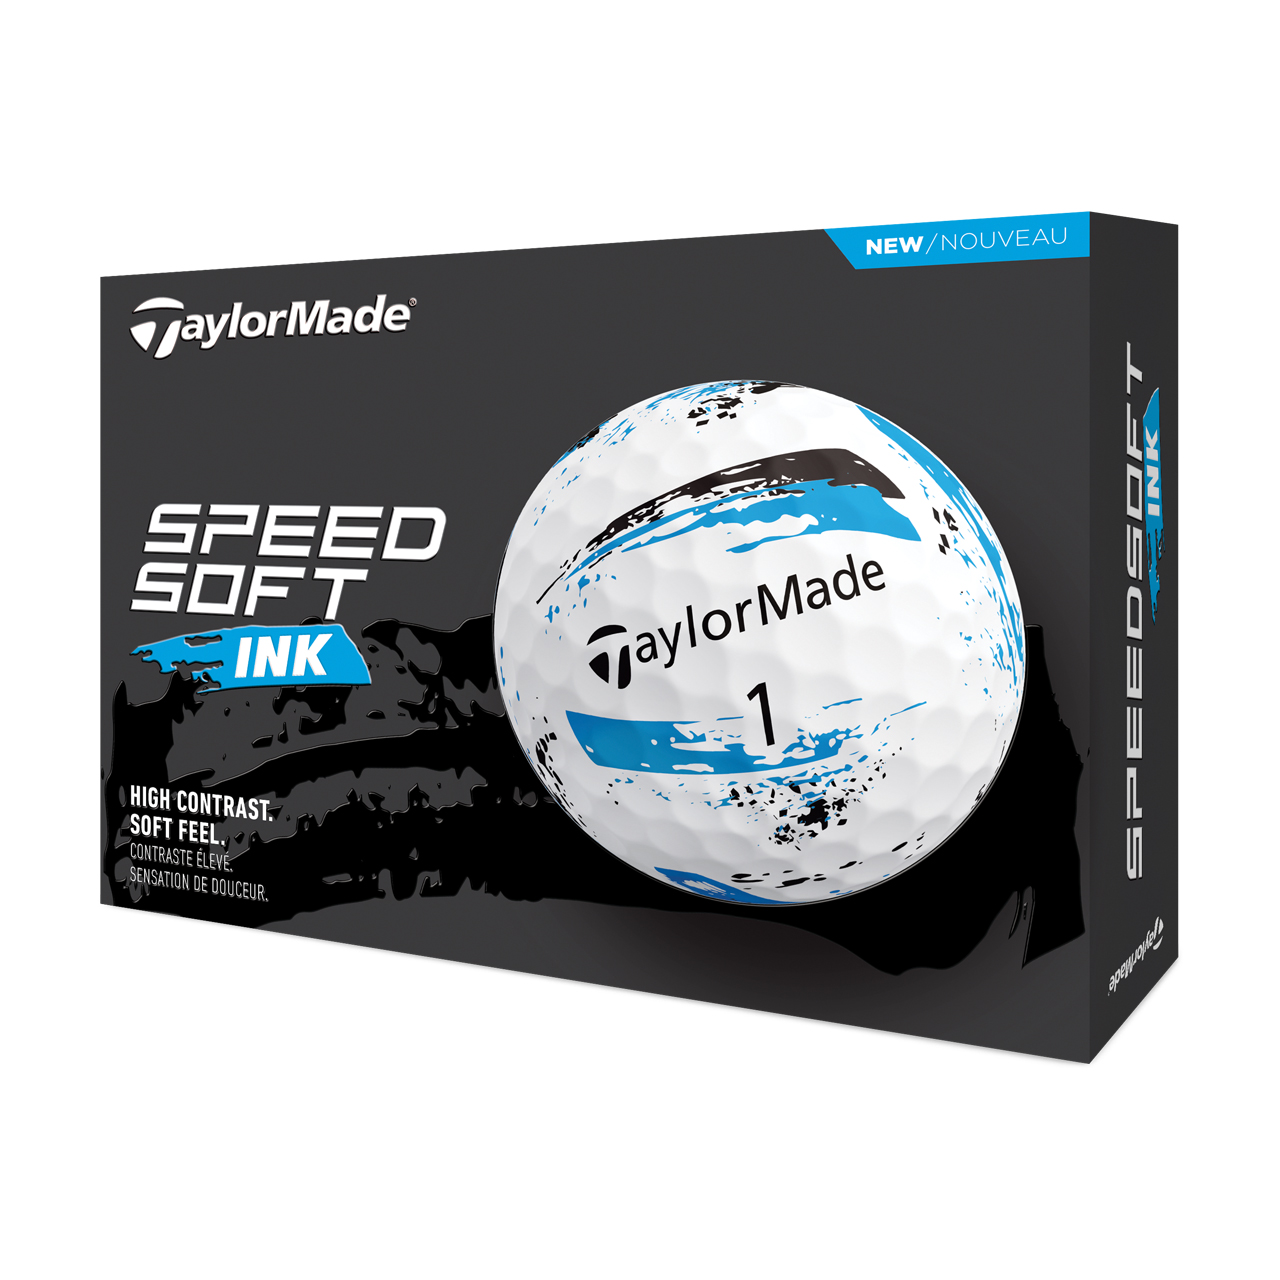 SpeedSoft Ink, Bälle 3-Pack - blue